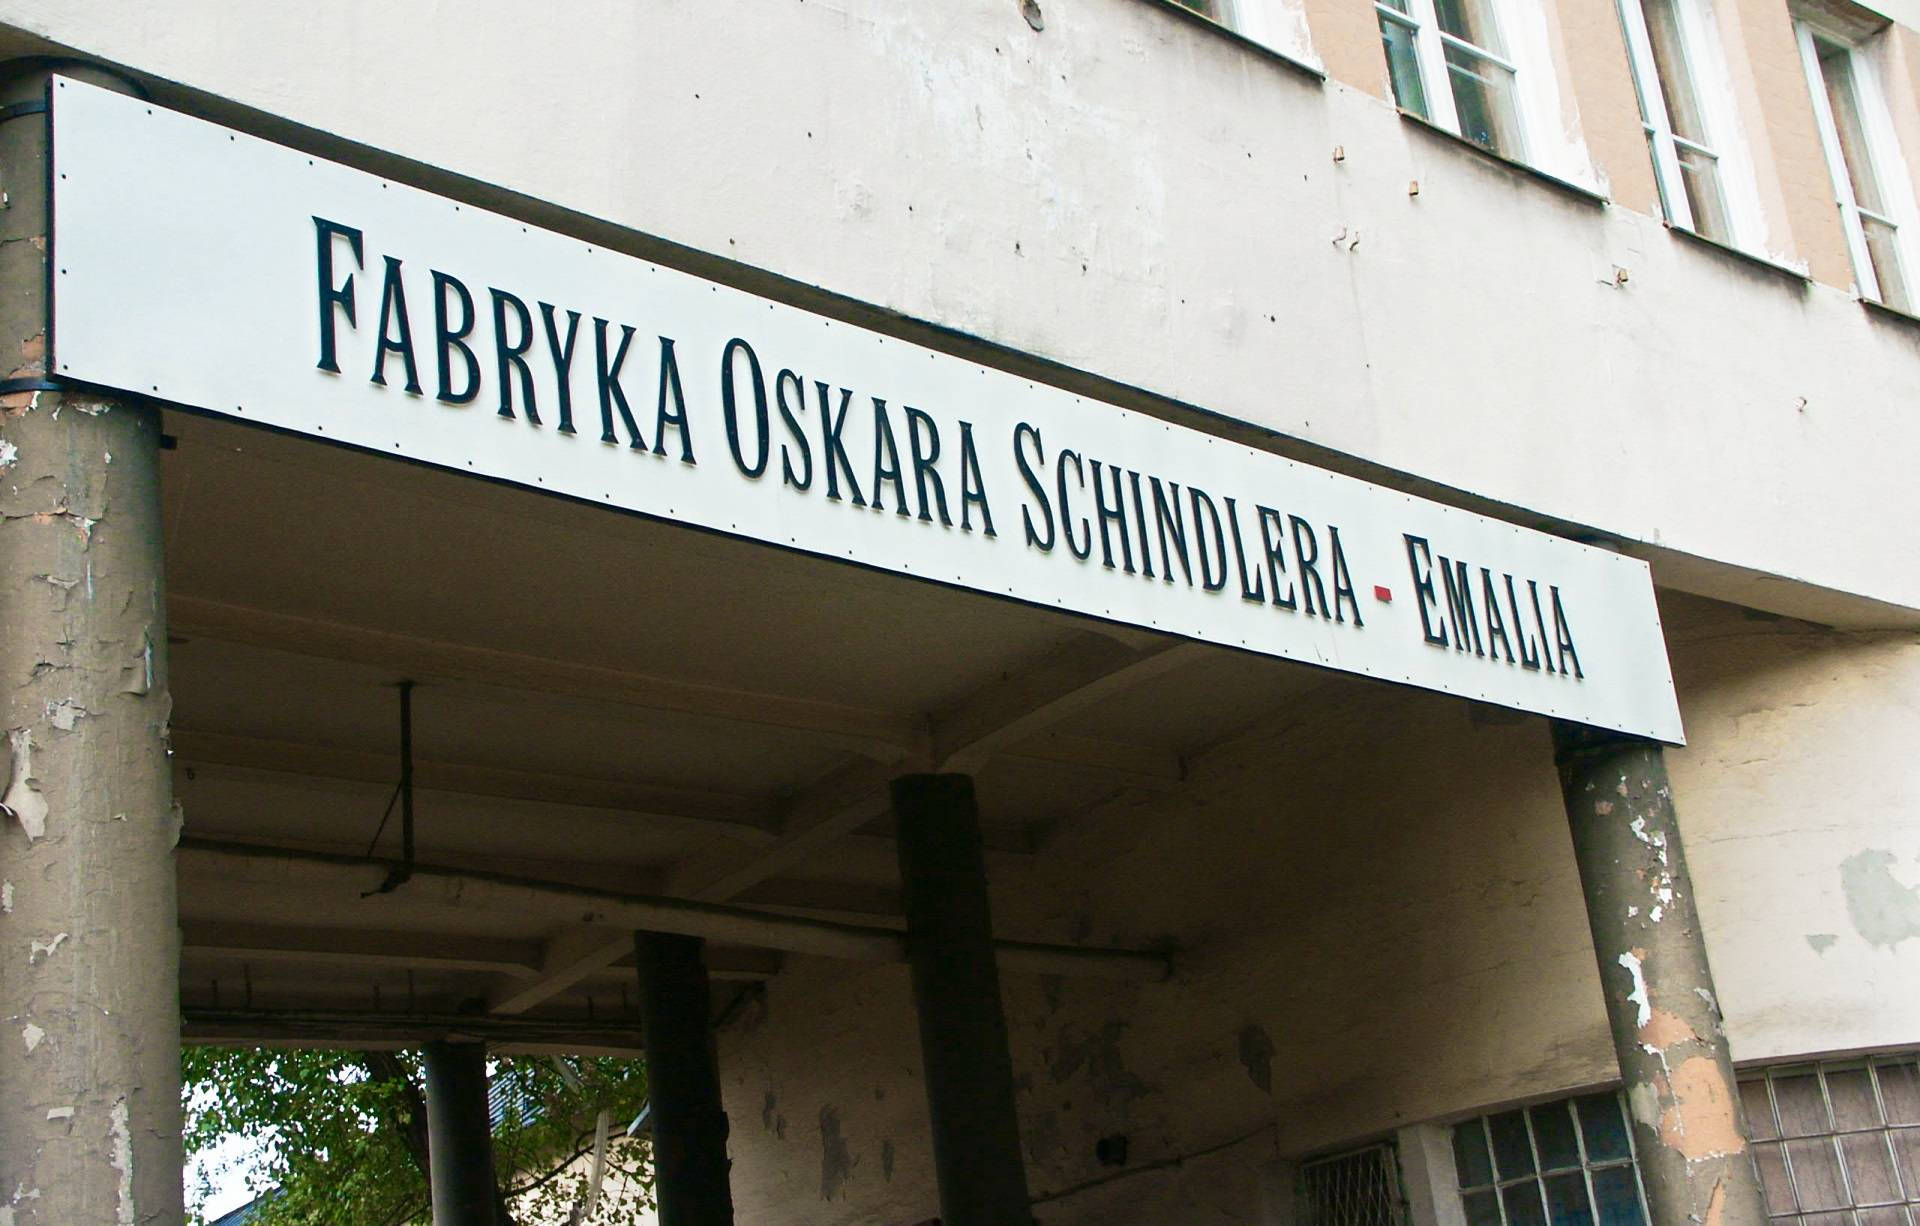 Oskar Schindler's Factory Poland